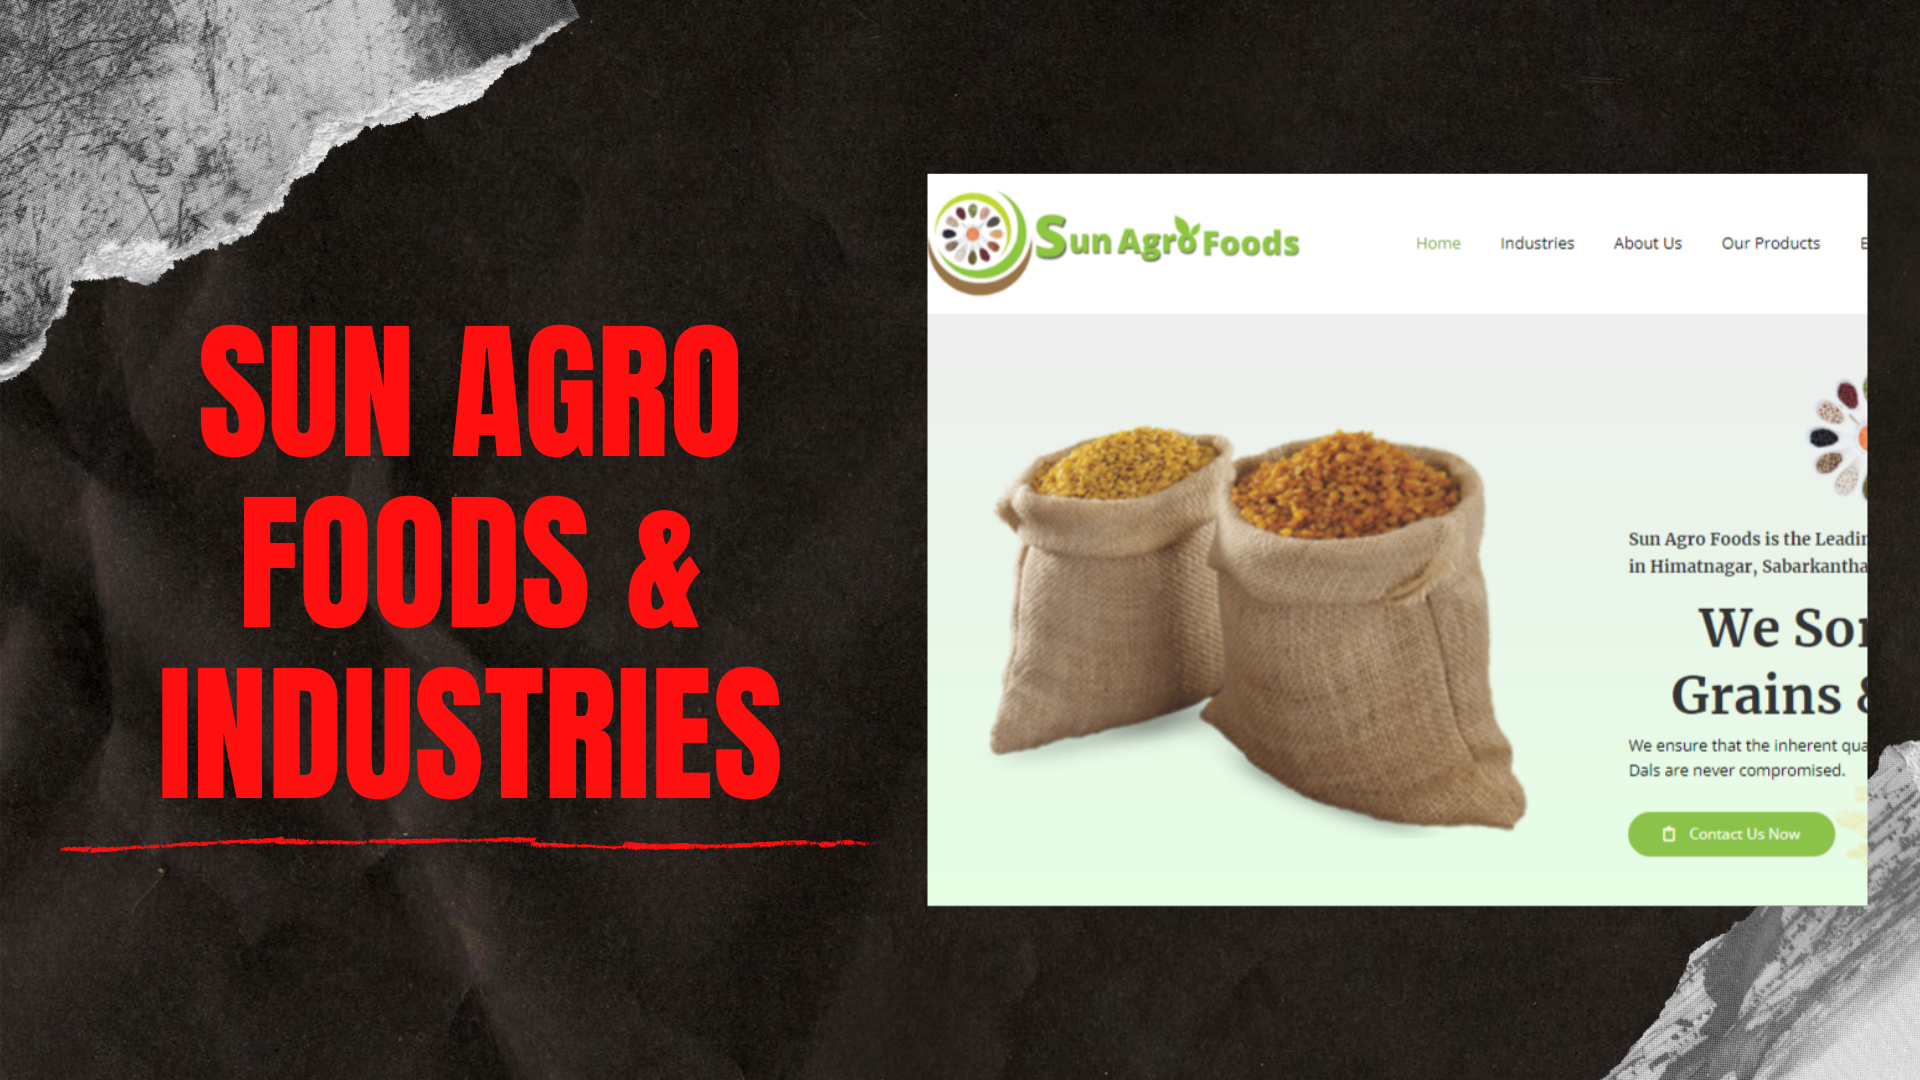 Sun Agro Foods